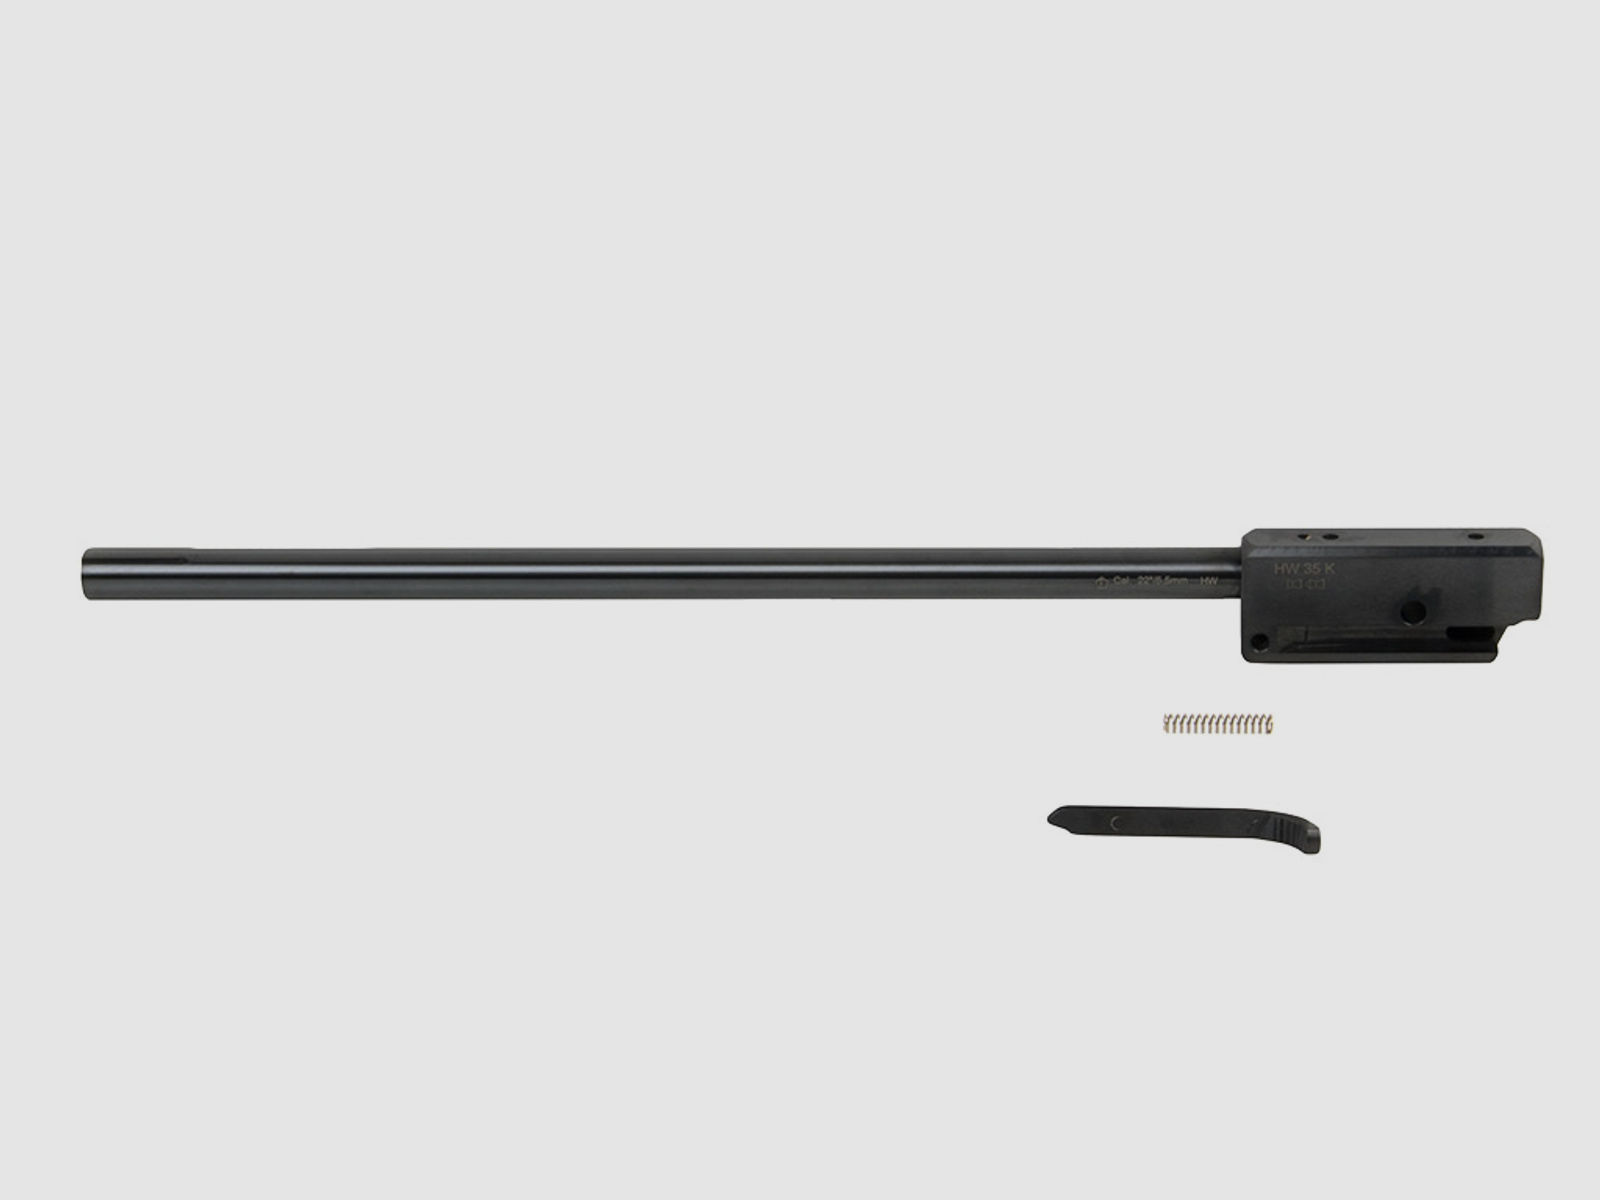 Wechsellauf fĂĽr Luftgewehr Weihrauch HW 35 LĂ¤nge 470 mm Kaliber 5,5 mm (P18)